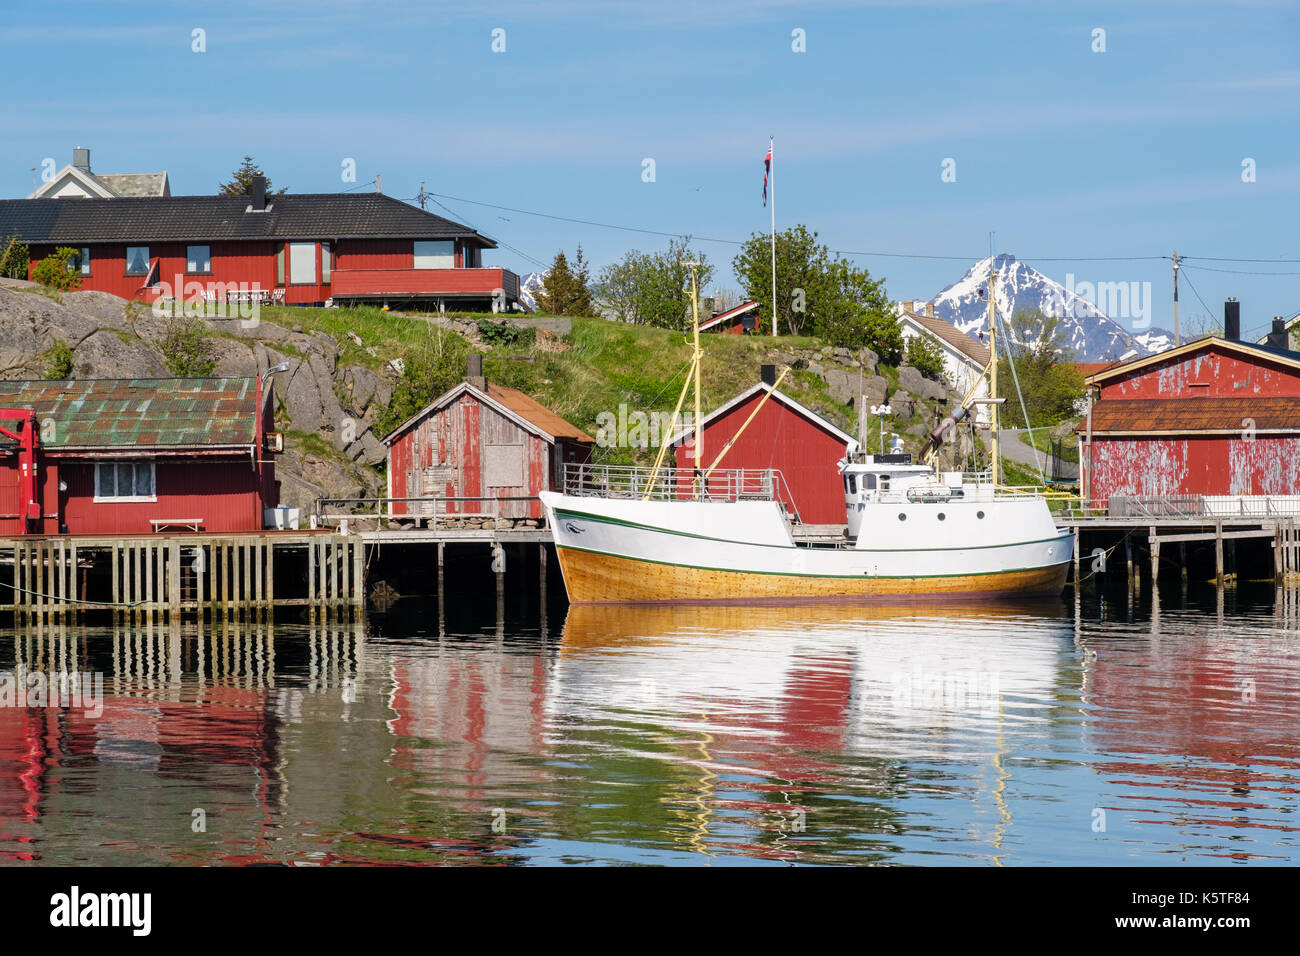 Bateau de pêche amarré au port avec Rorbu abris sur pilotis au village norvégien. Ballstad, Vestvågøya, îles Lofoten, Nordland, Norvège Banque D'Images